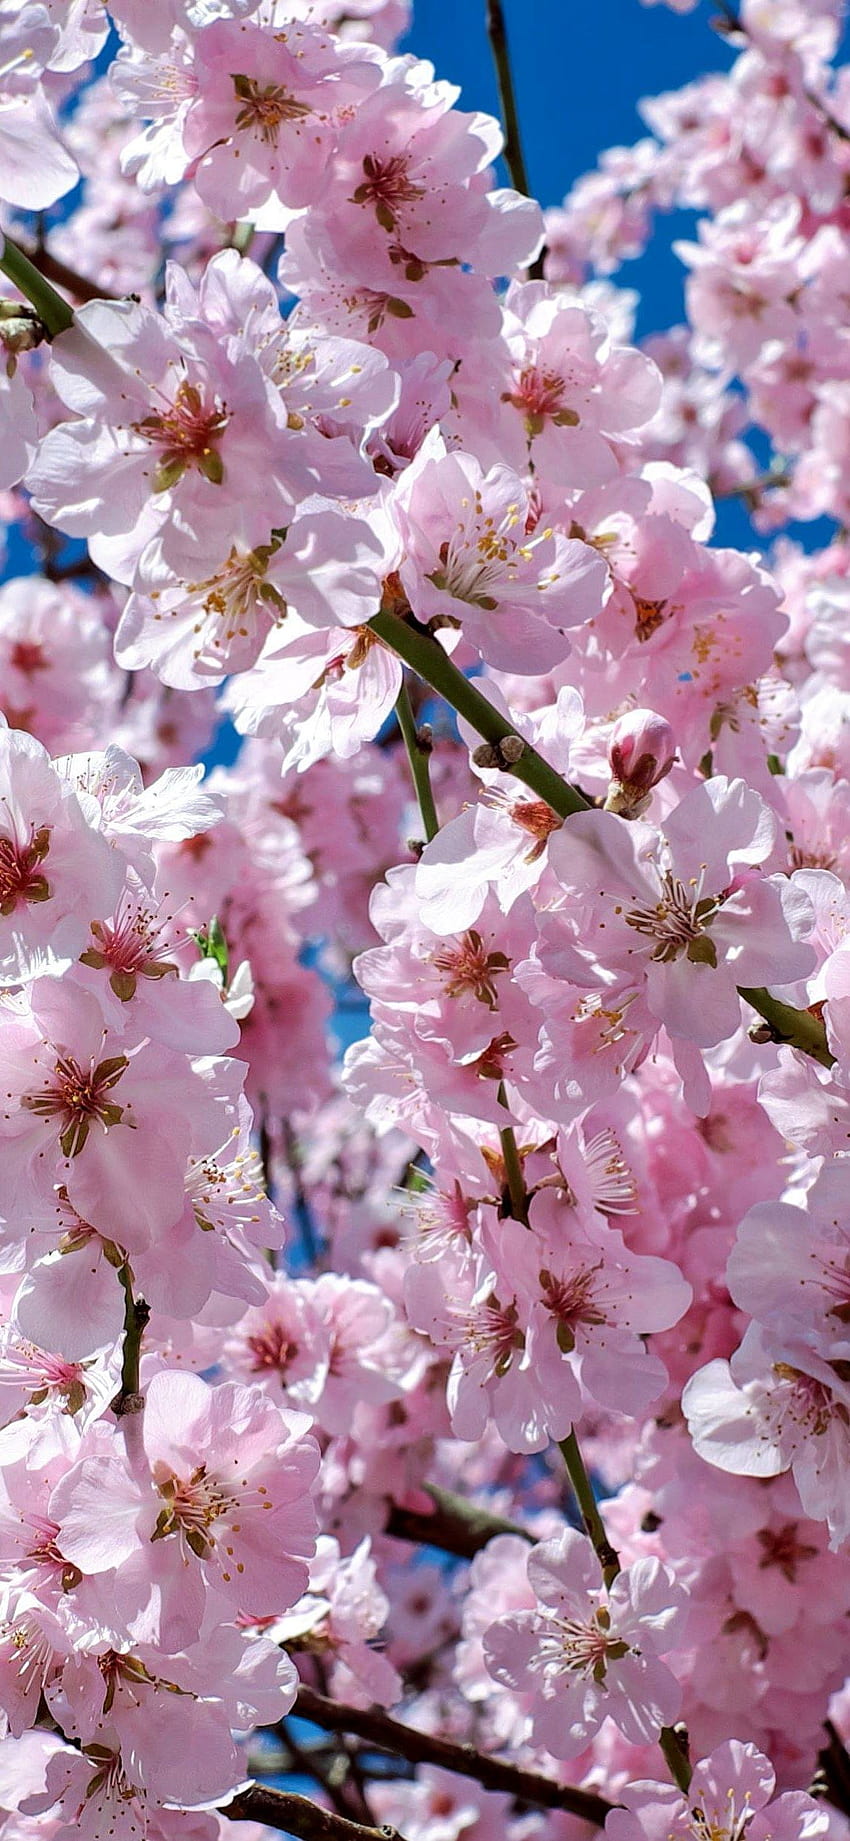 pohon ceri jepang bunga pohon merah muda Iphone X, estetika pohon merah muda jepang wallpaper ponsel HD